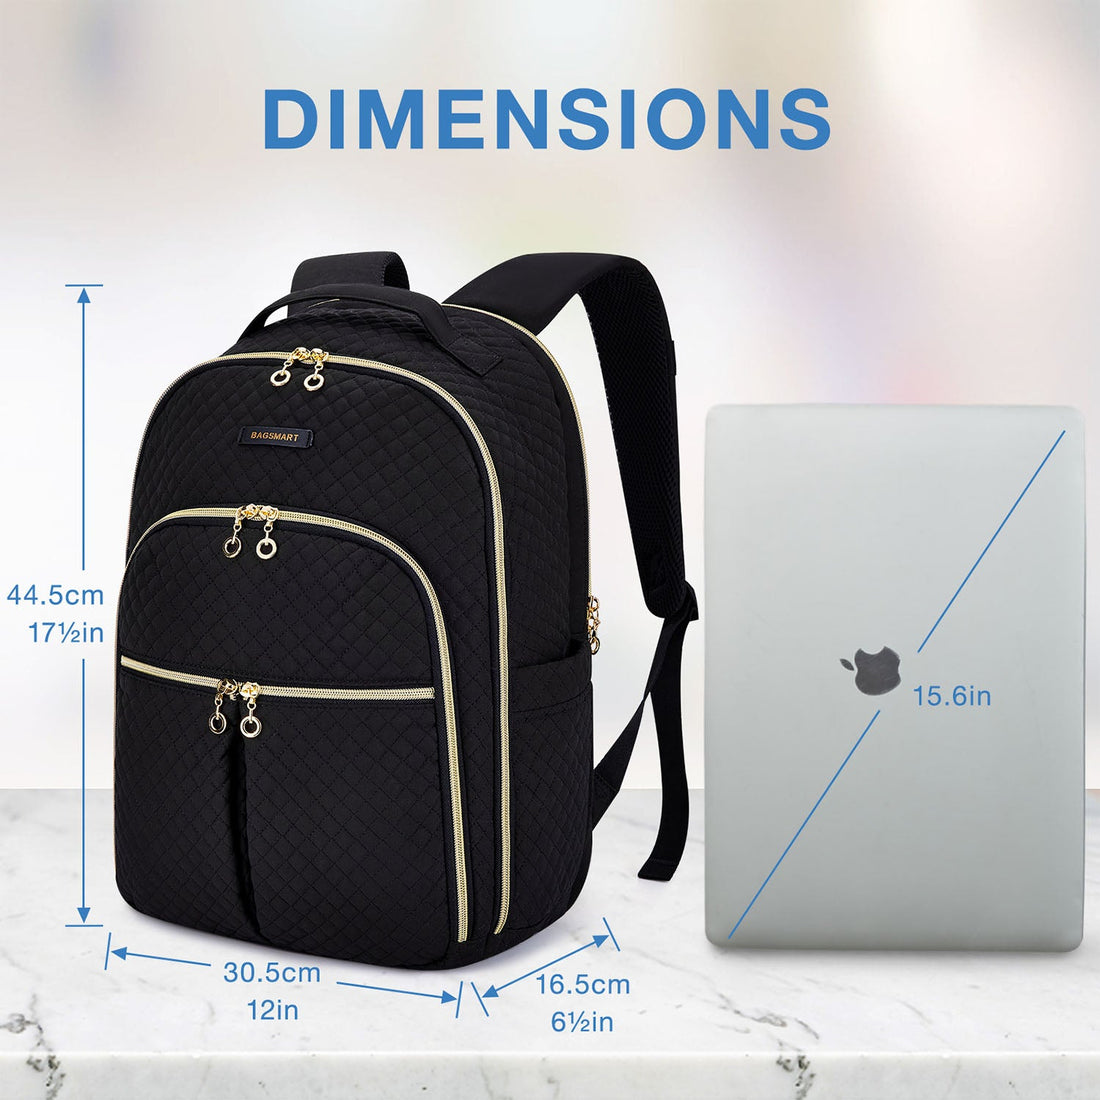  BAGSMART Laptop Bag for Women, 15.6 Inch Computer Bag